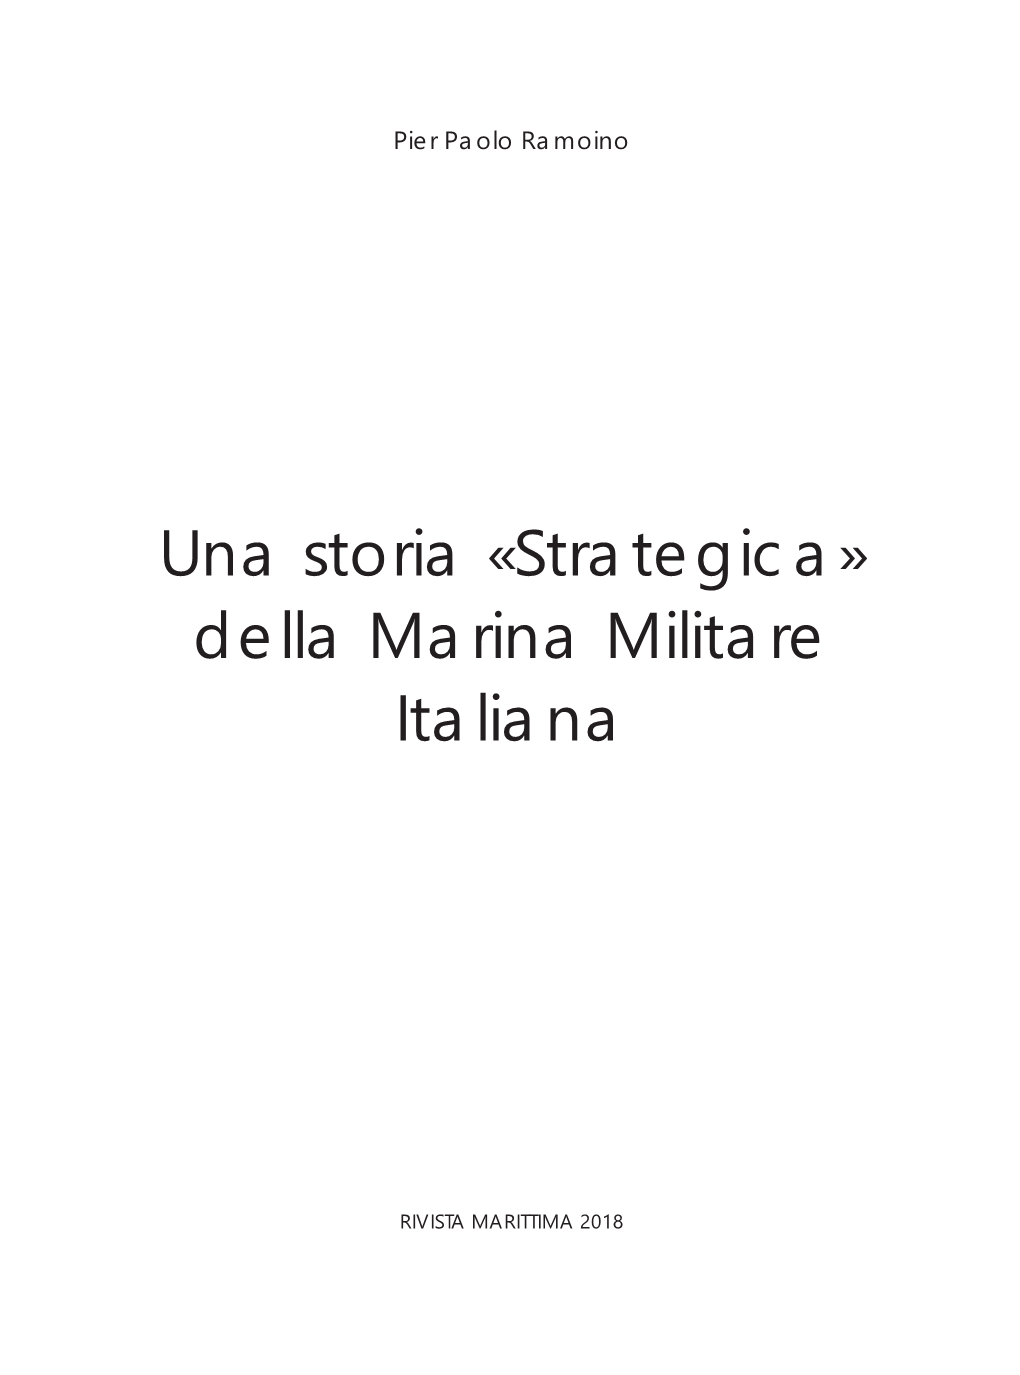 Una Storia «Strategica» Della Marina Militare Italiana